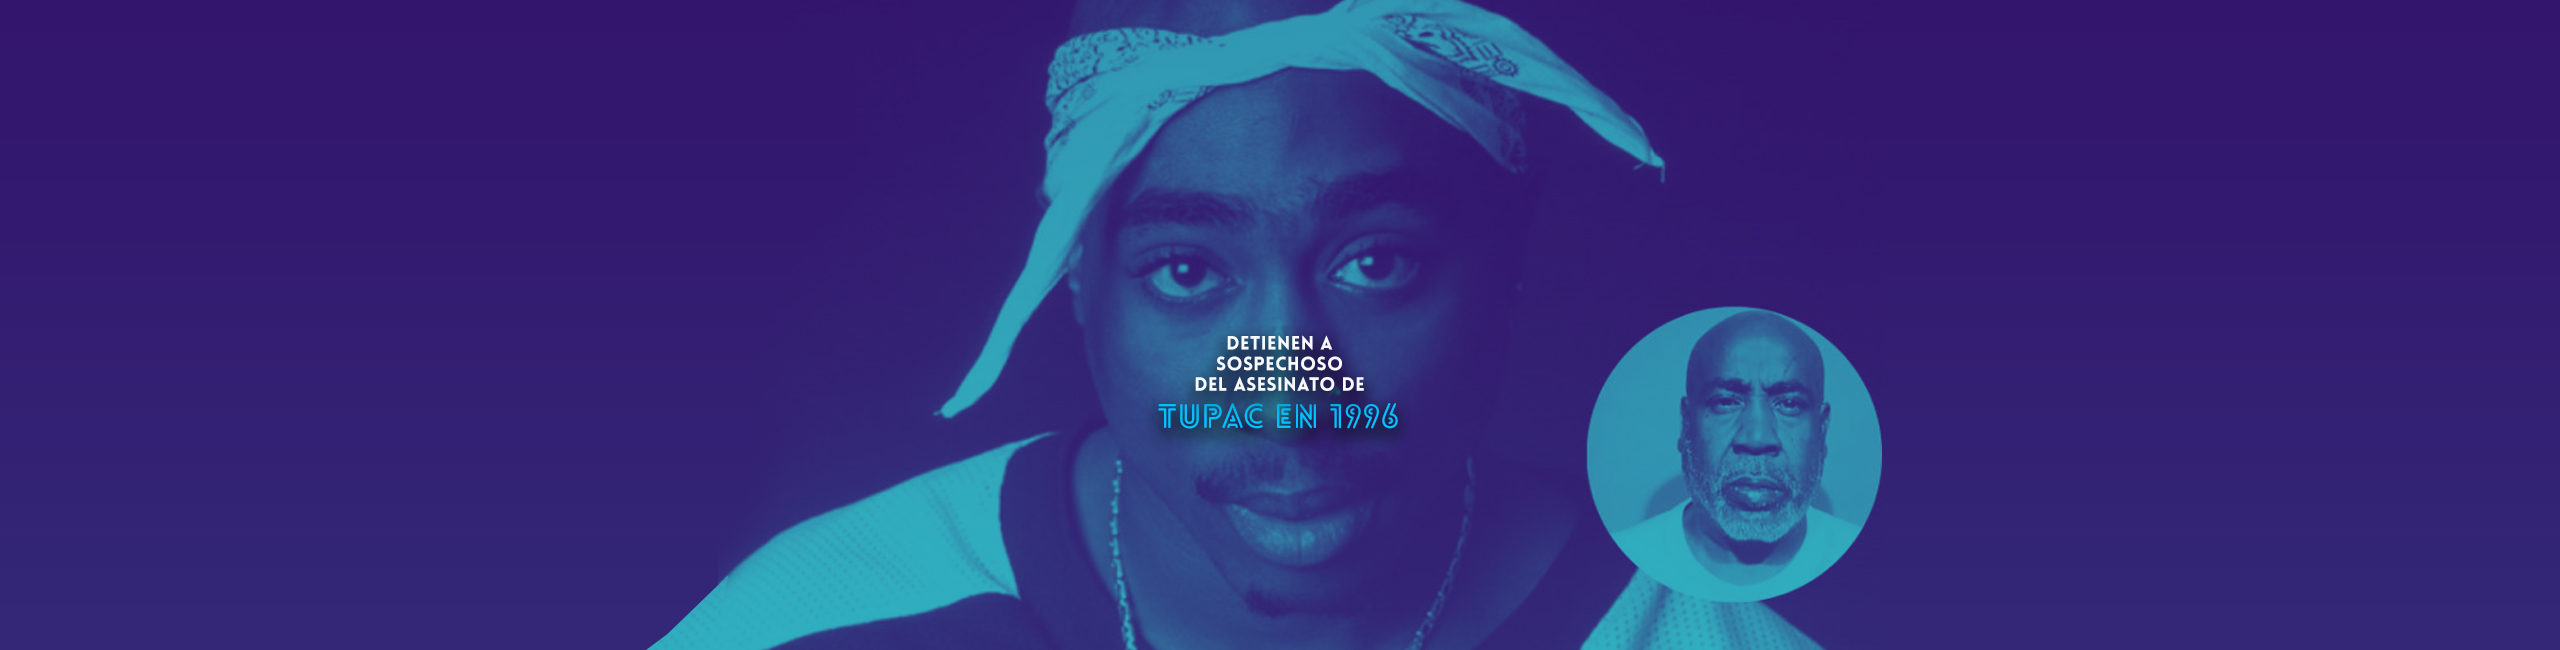 Detienen a sospechoso del asesinato de Tupac en 1996